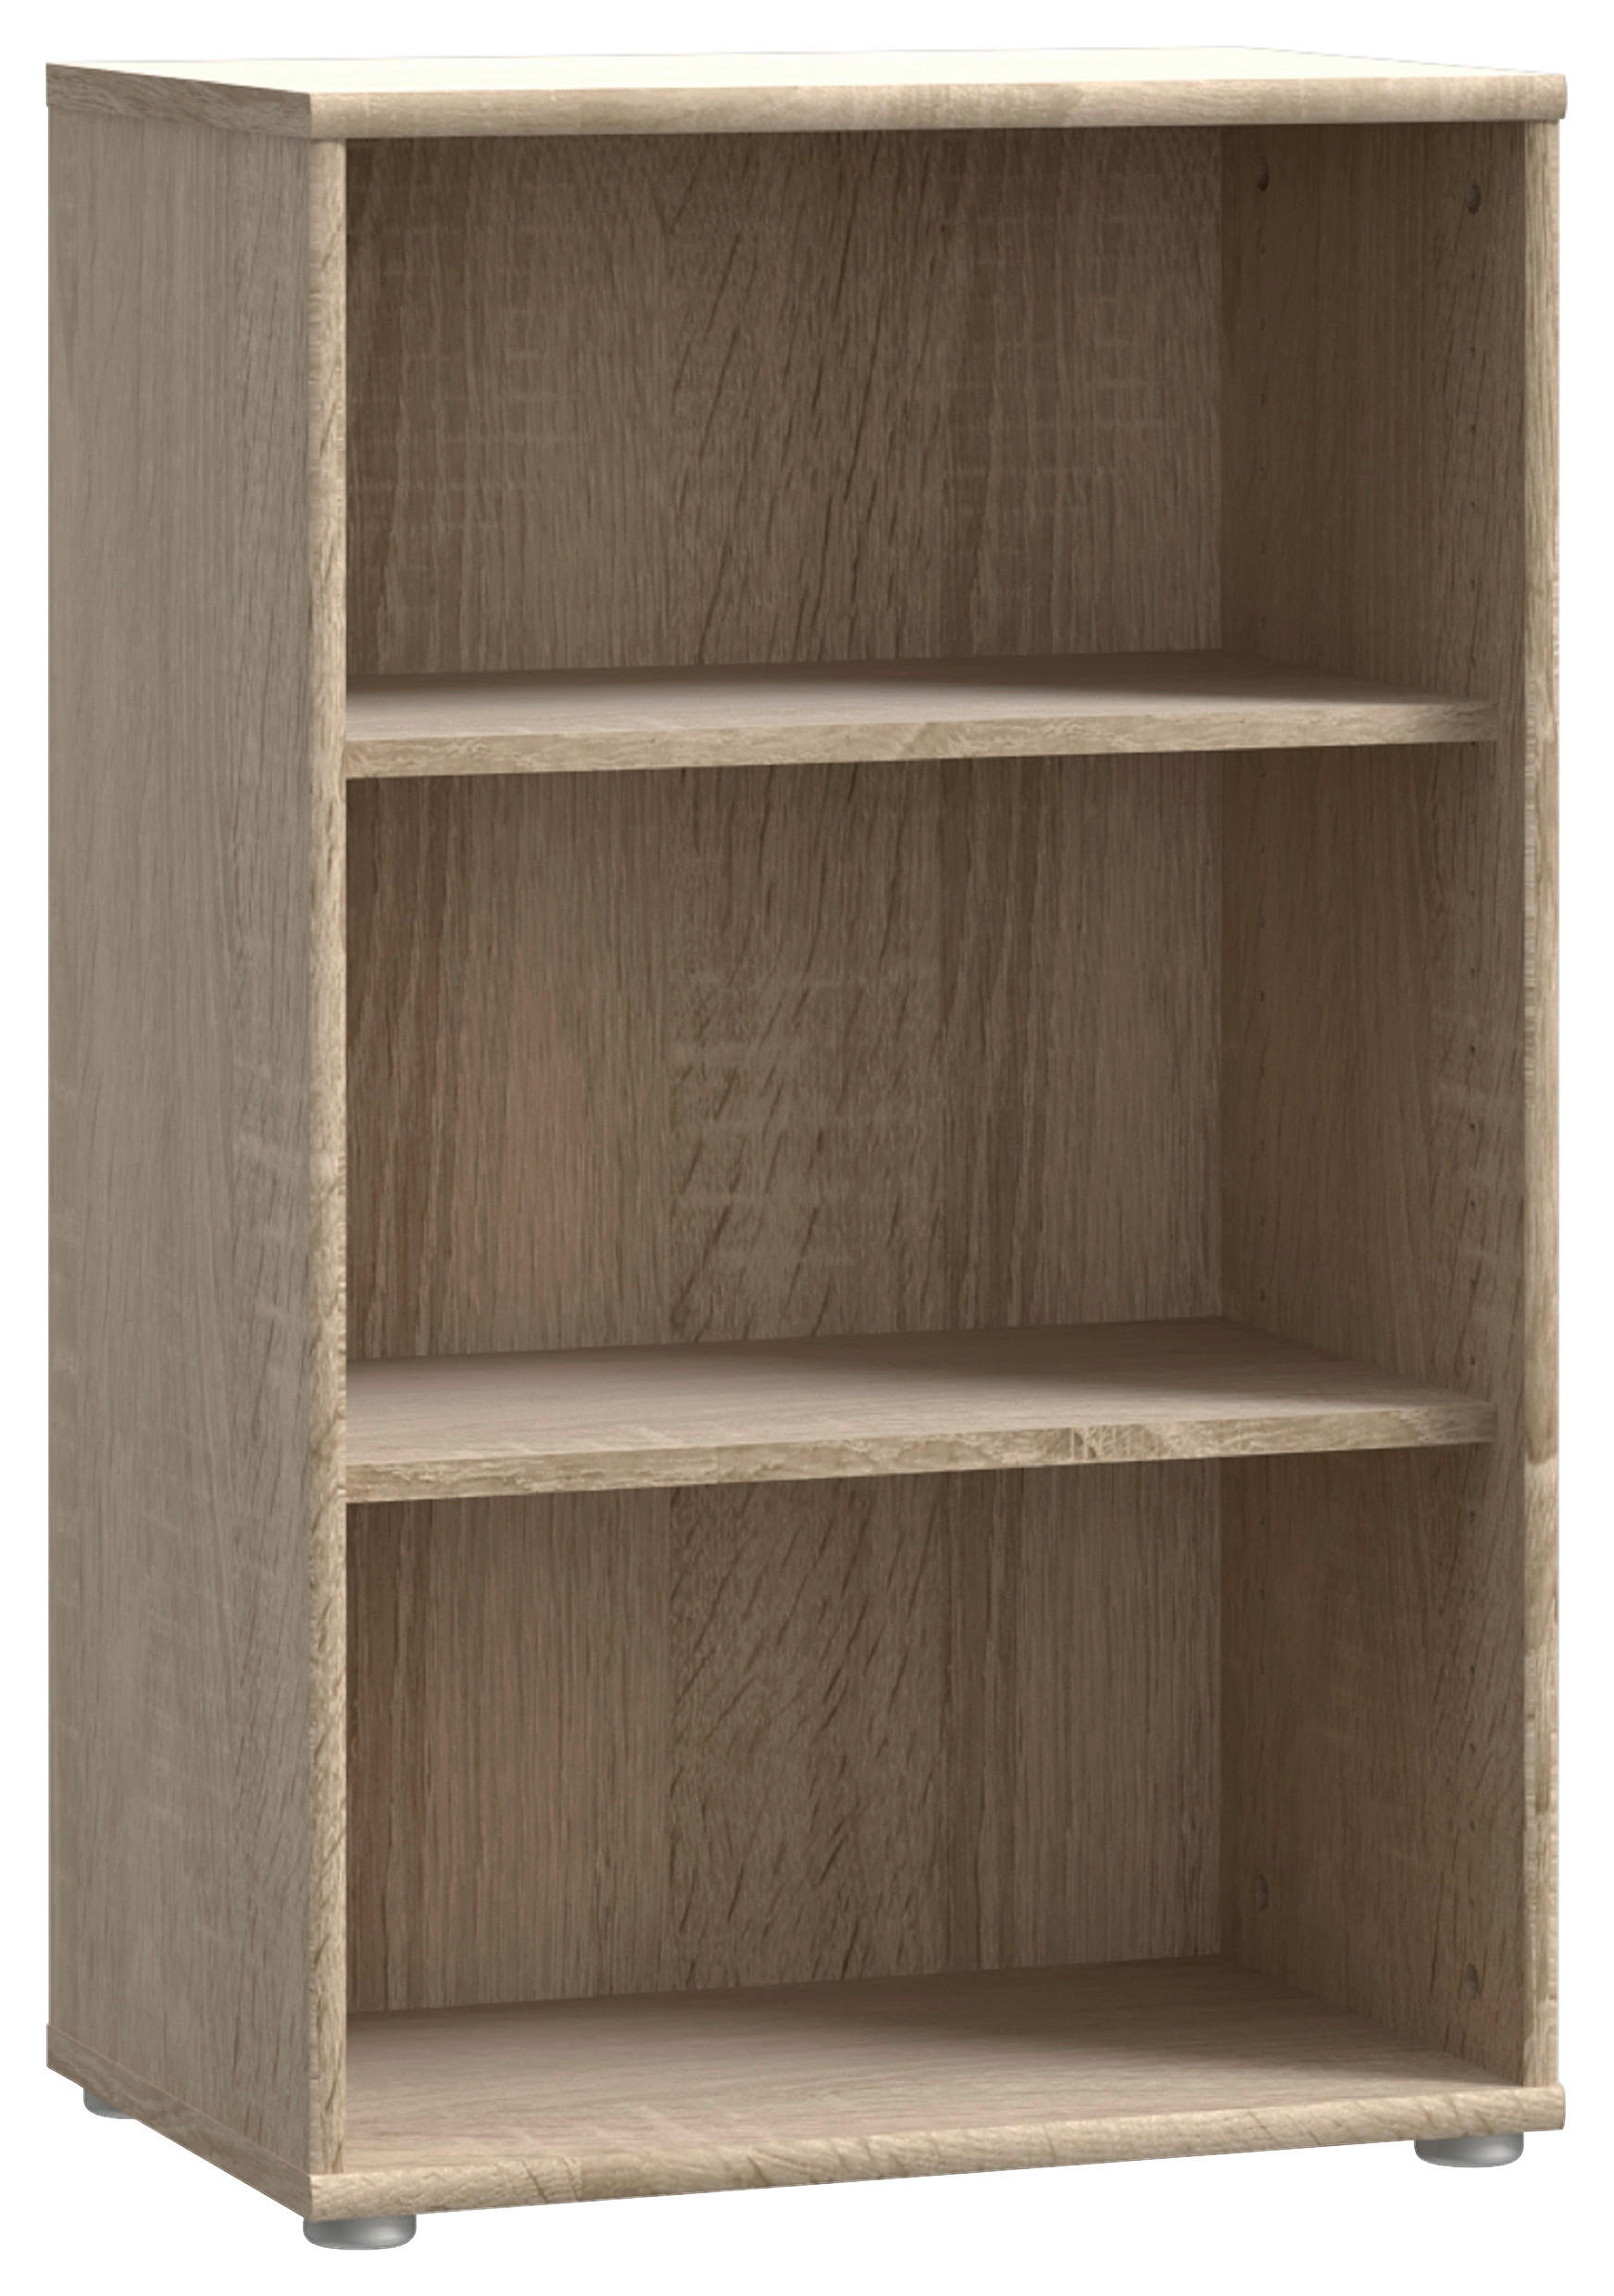 REGAL Sonoma Eiche  - Alufarben/Sonoma Eiche, Design, Holzwerkstoff/Kunststoff (54/111,1/34,8cm)